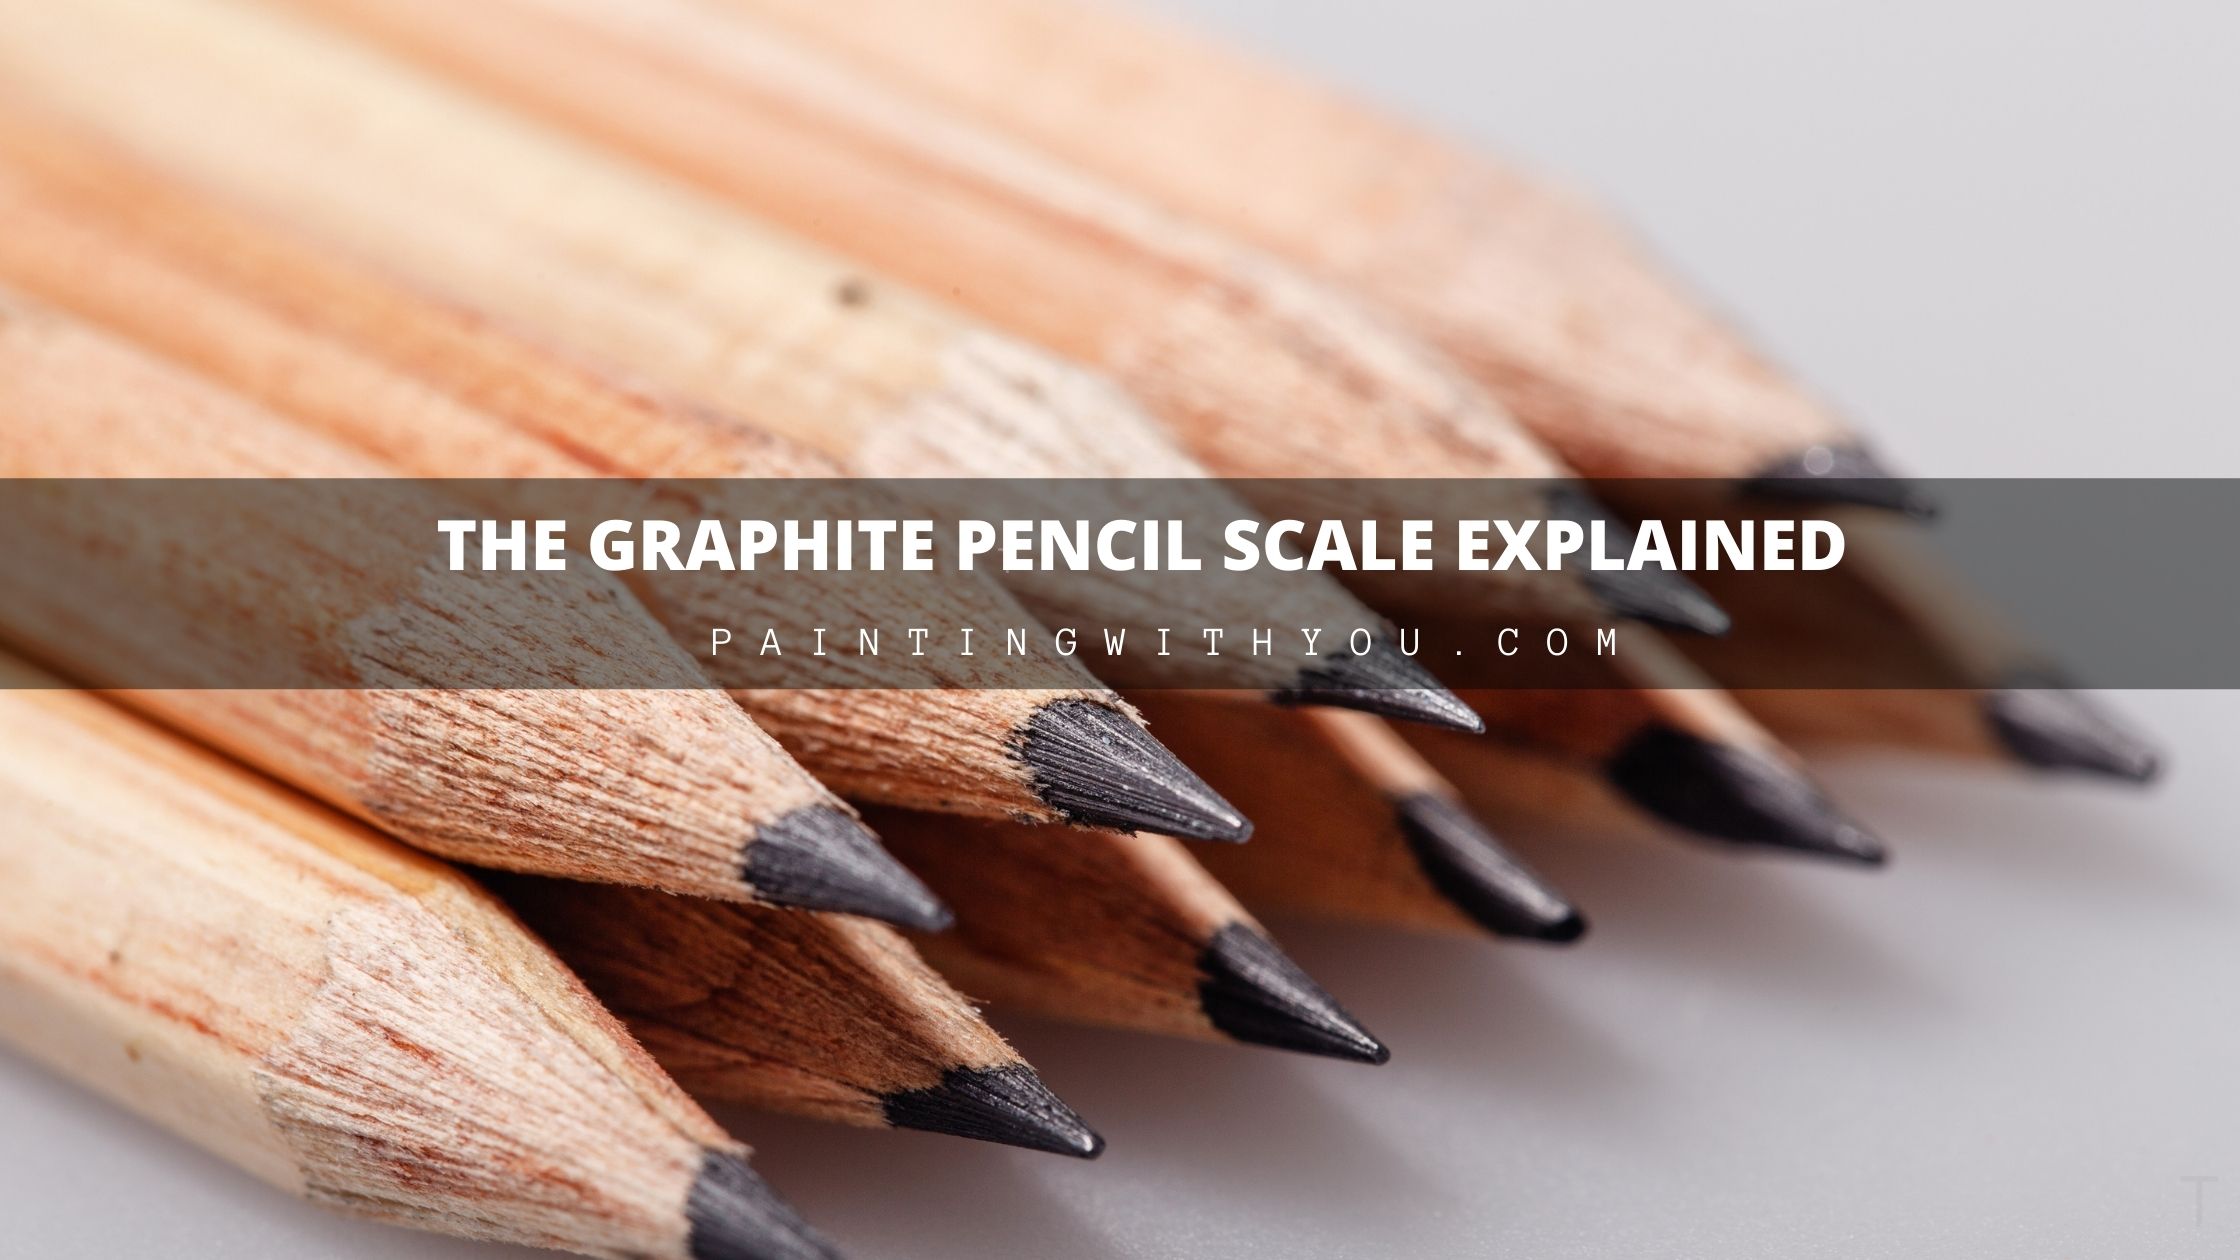 The Graphite Pencil Scale